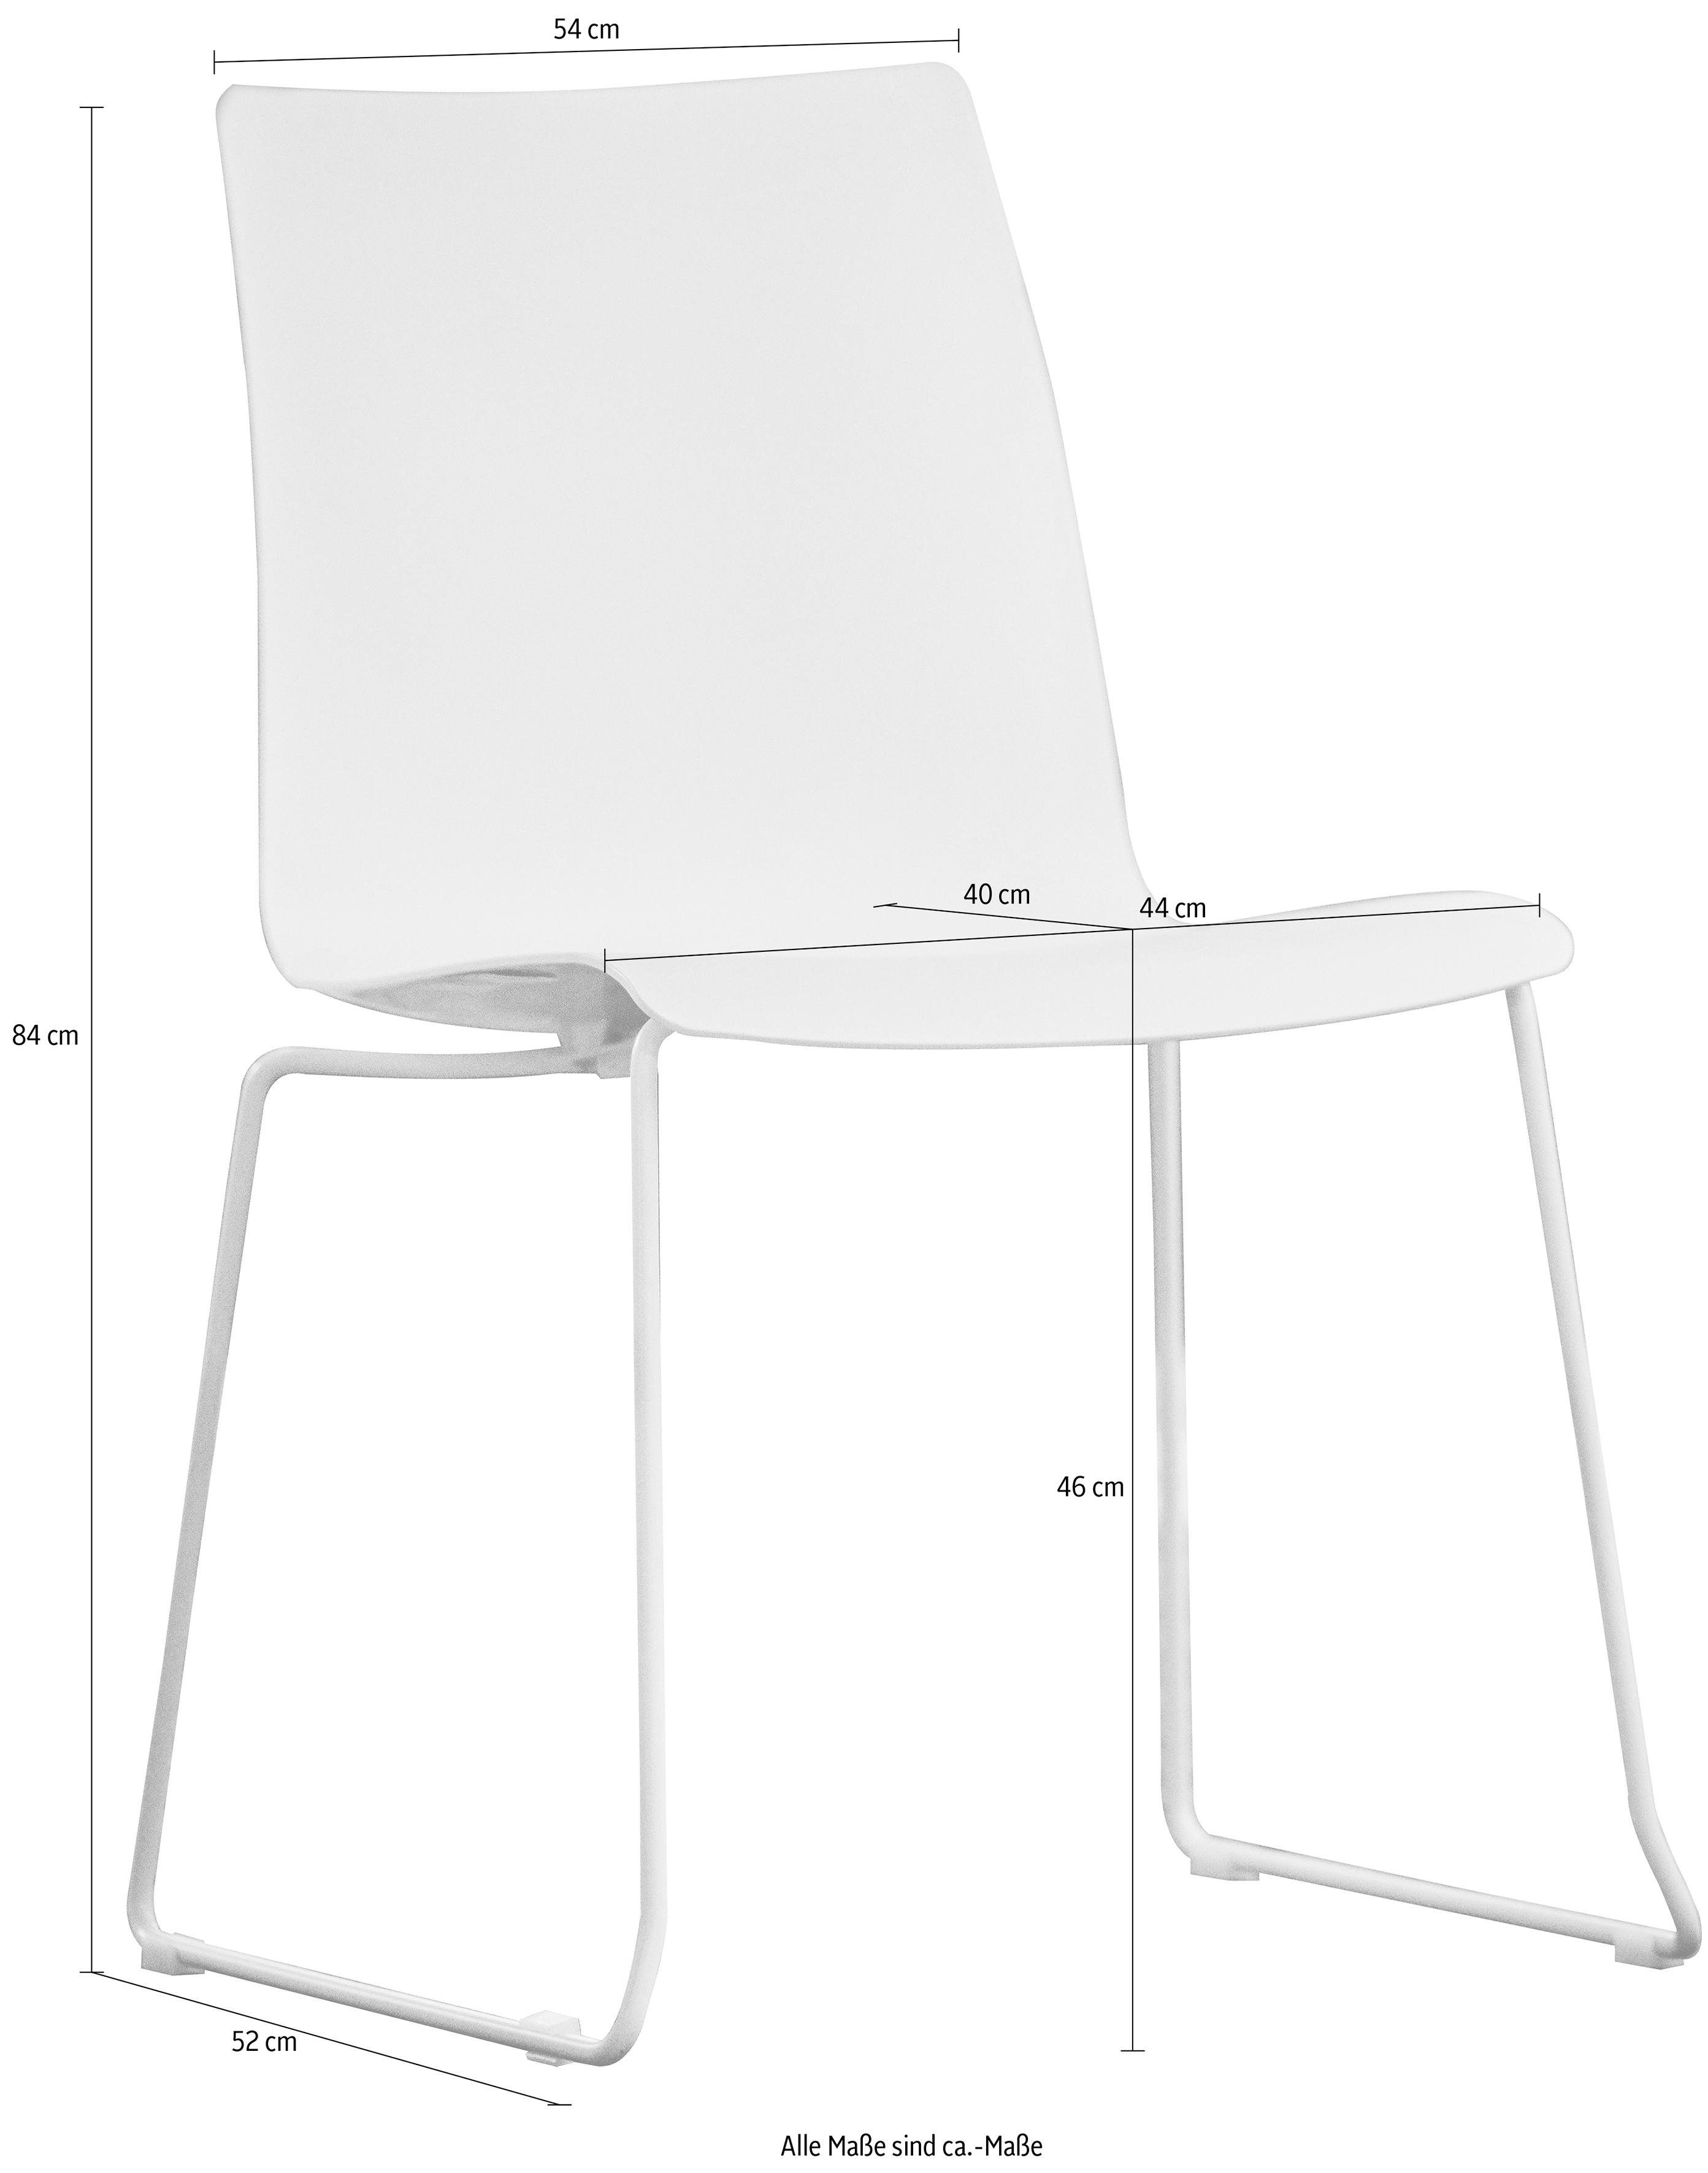 jankurtz Stuhl slide, Sitzschale aus Kunsstoff, stapelbar, in 3 Farben weiß | chromfarben